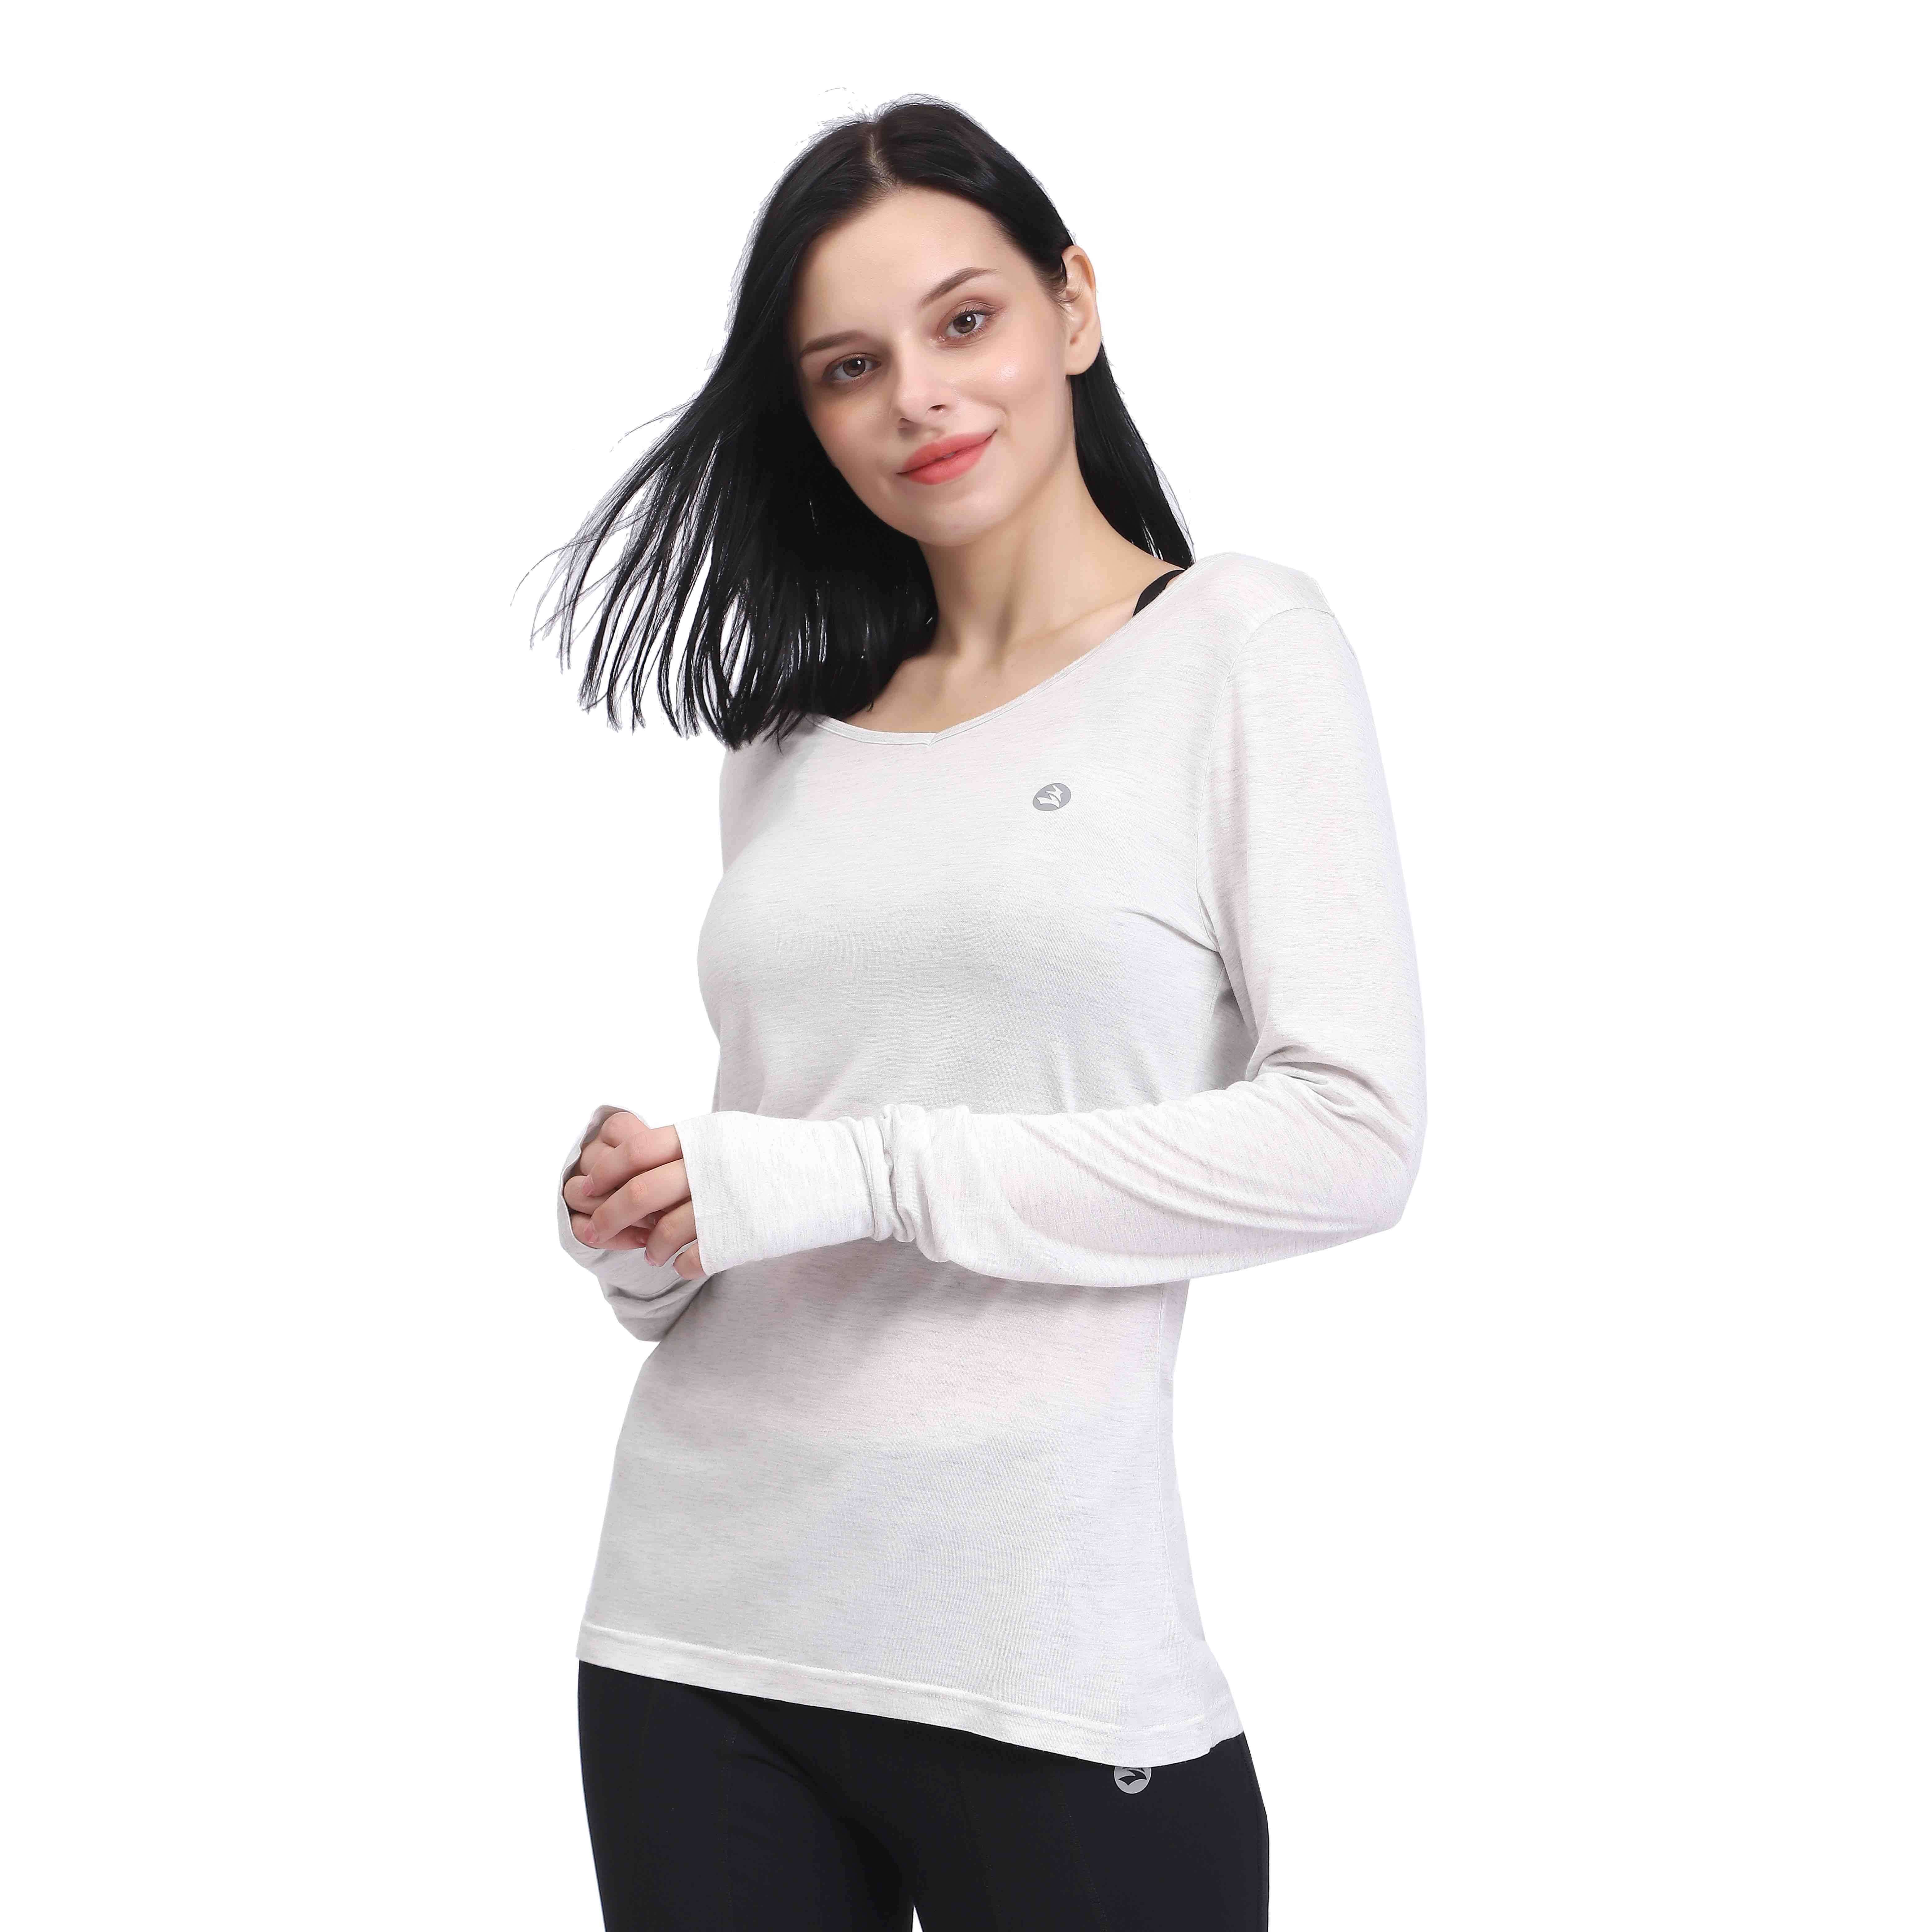 "Camisas de yoga blancas de manga larga con espalda abierta para mujer"